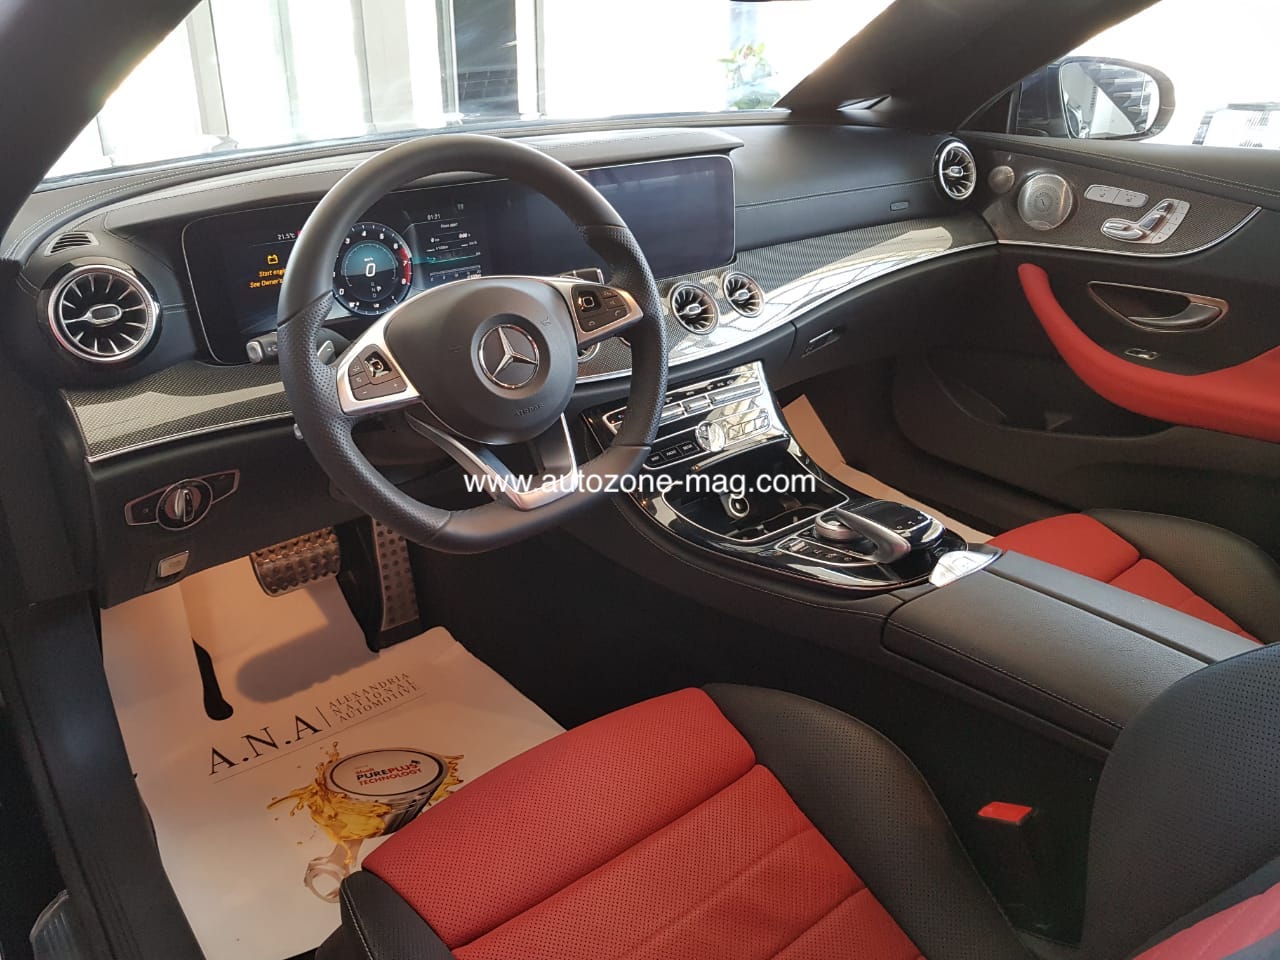 مواصفات وأسعار مرسيدس E300 Cabriolet موديل 2019 في مصر